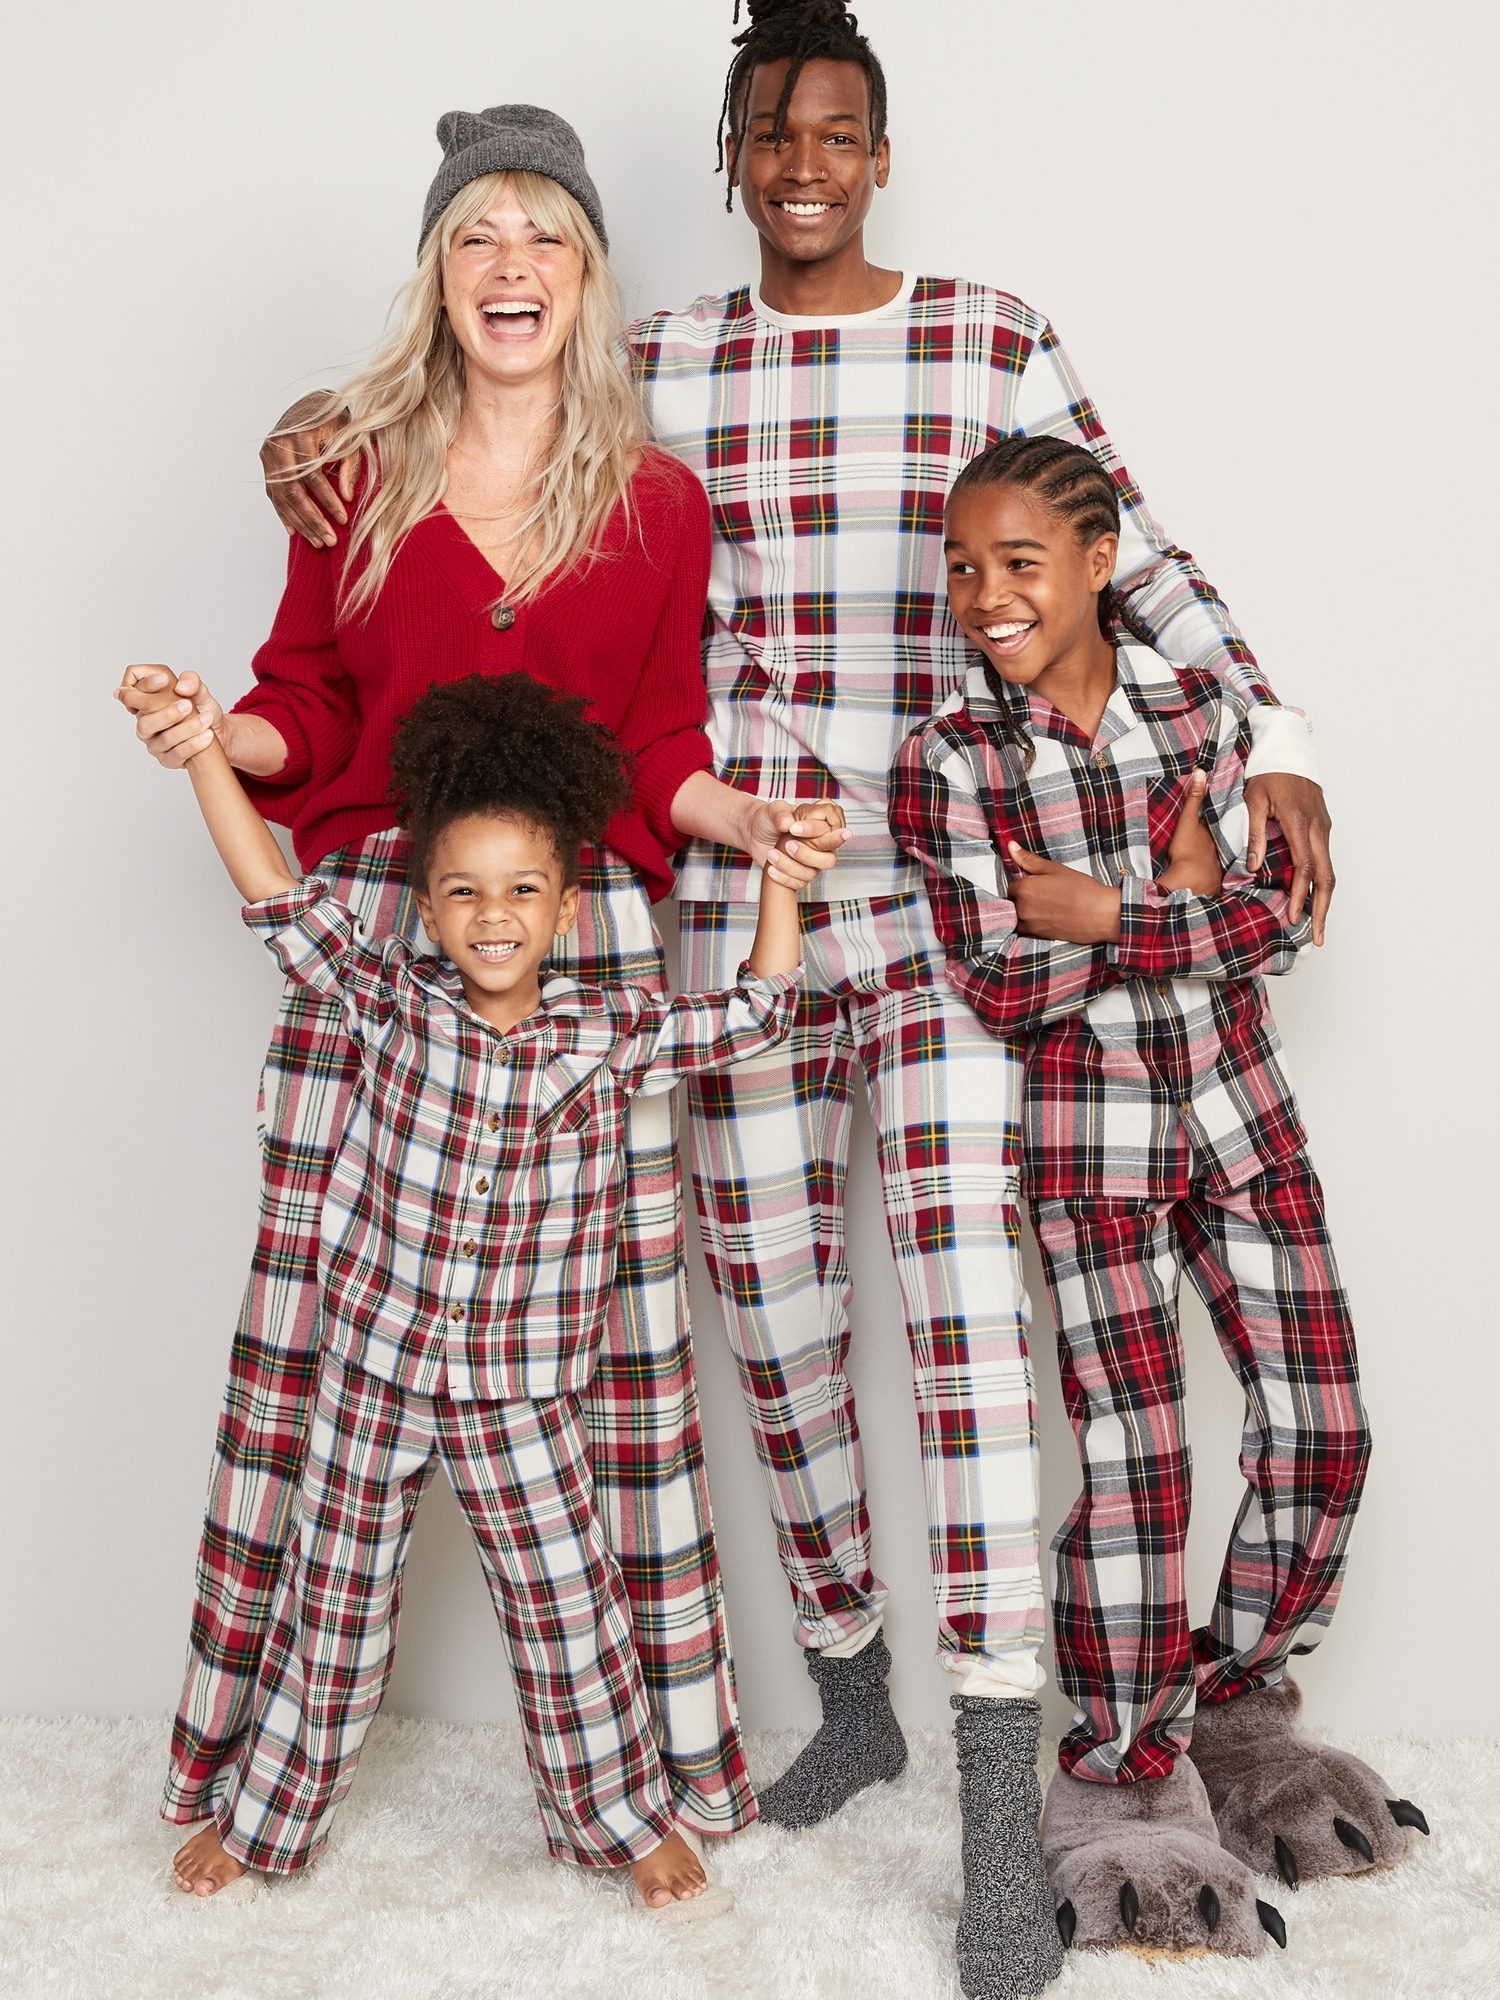 Unisex Matching Print Pajamas for Toddler & Baby